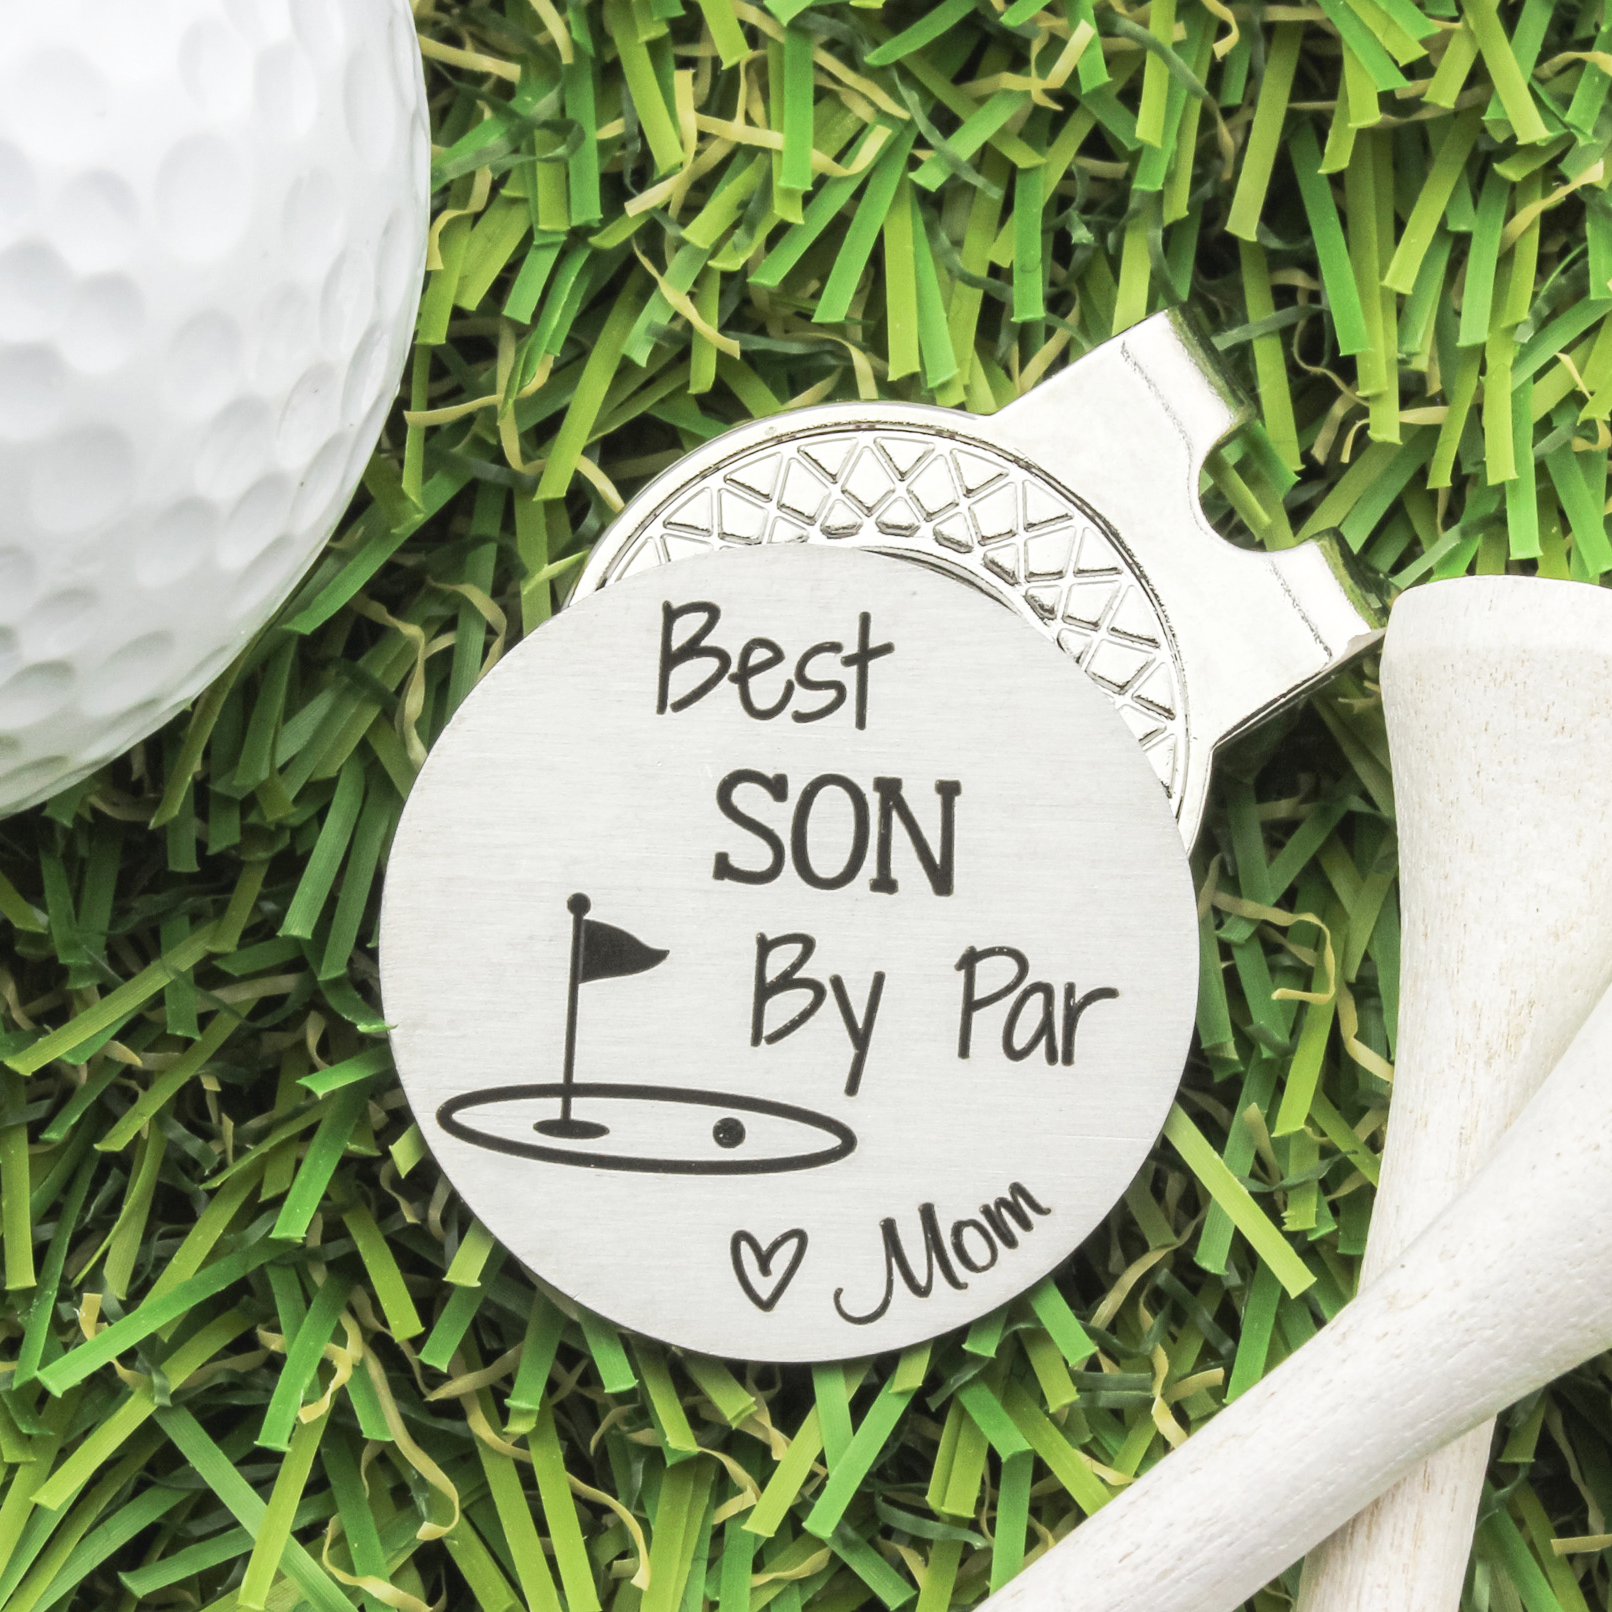 Golf Ball Marker Gift for Son from Mom - Heartfelt Tokens